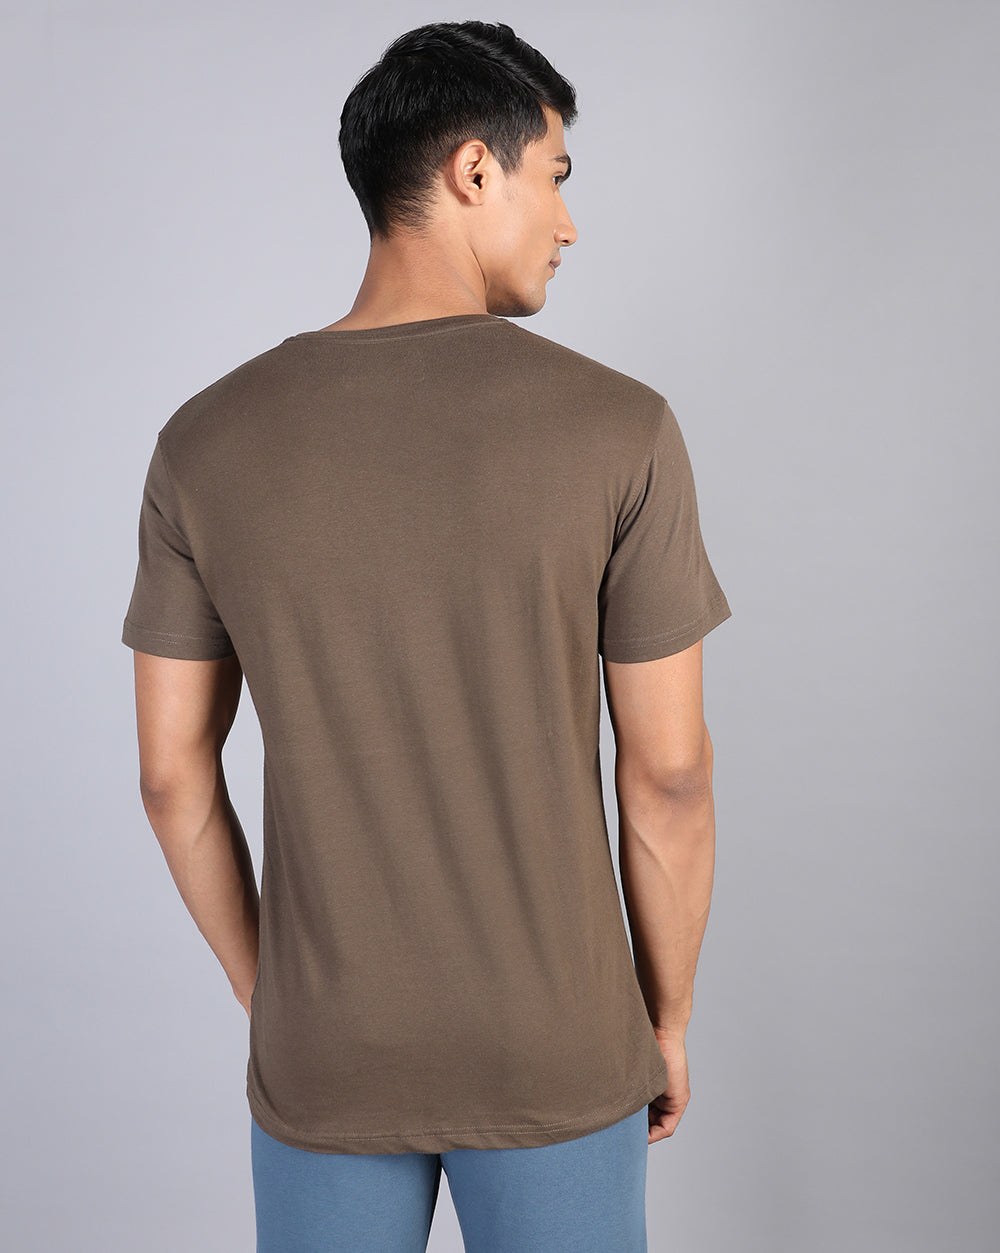 Crew neck Comfort Strech T-Shirt Brown